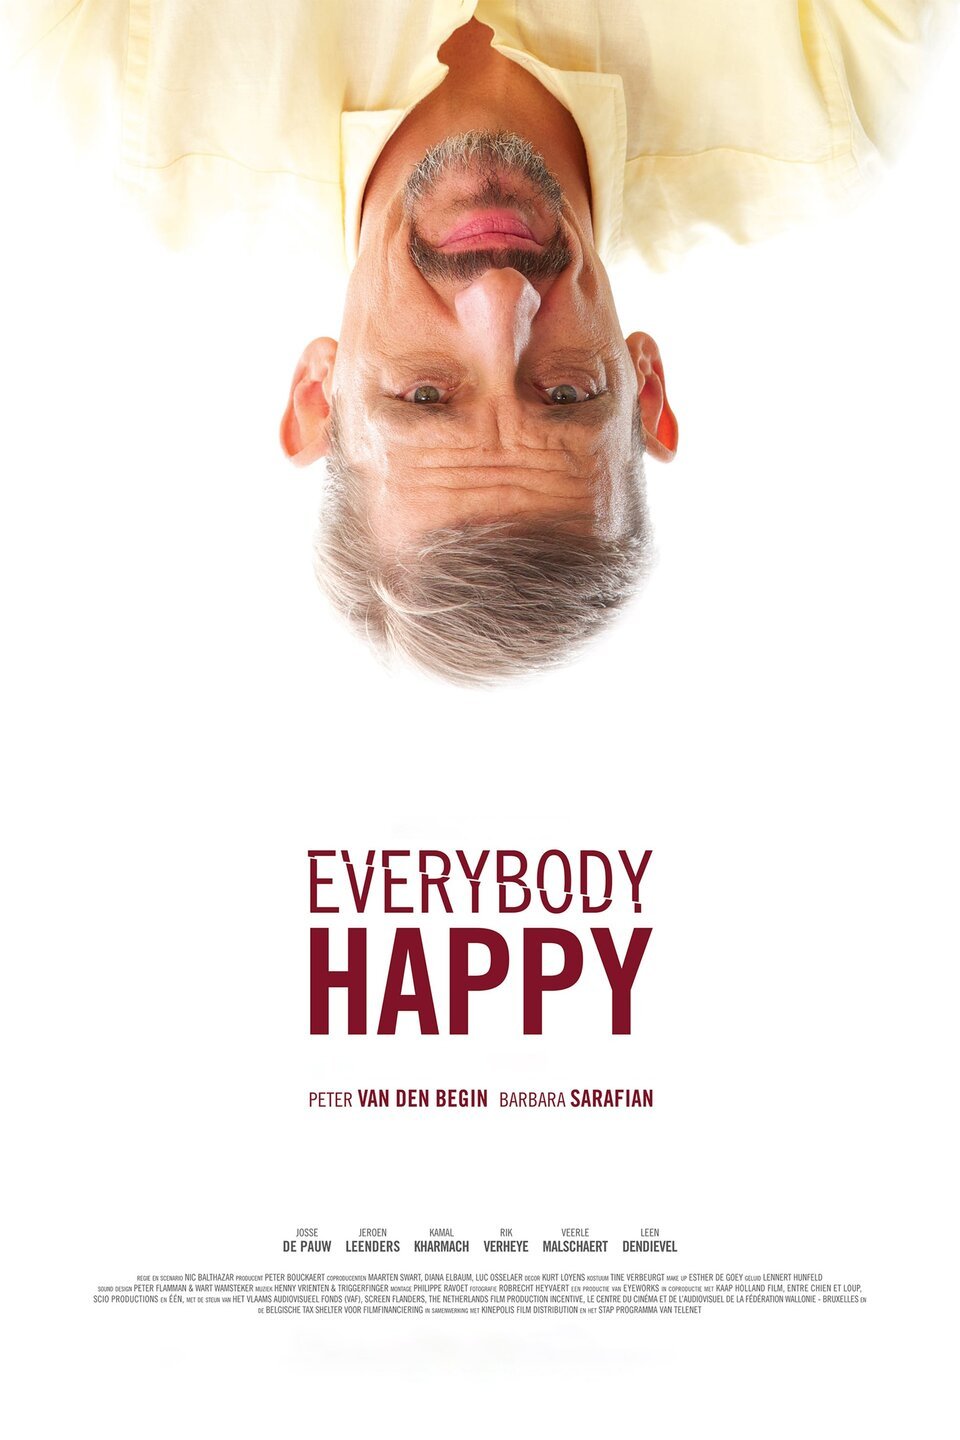 Everybody be happy. Everybody is Happy.